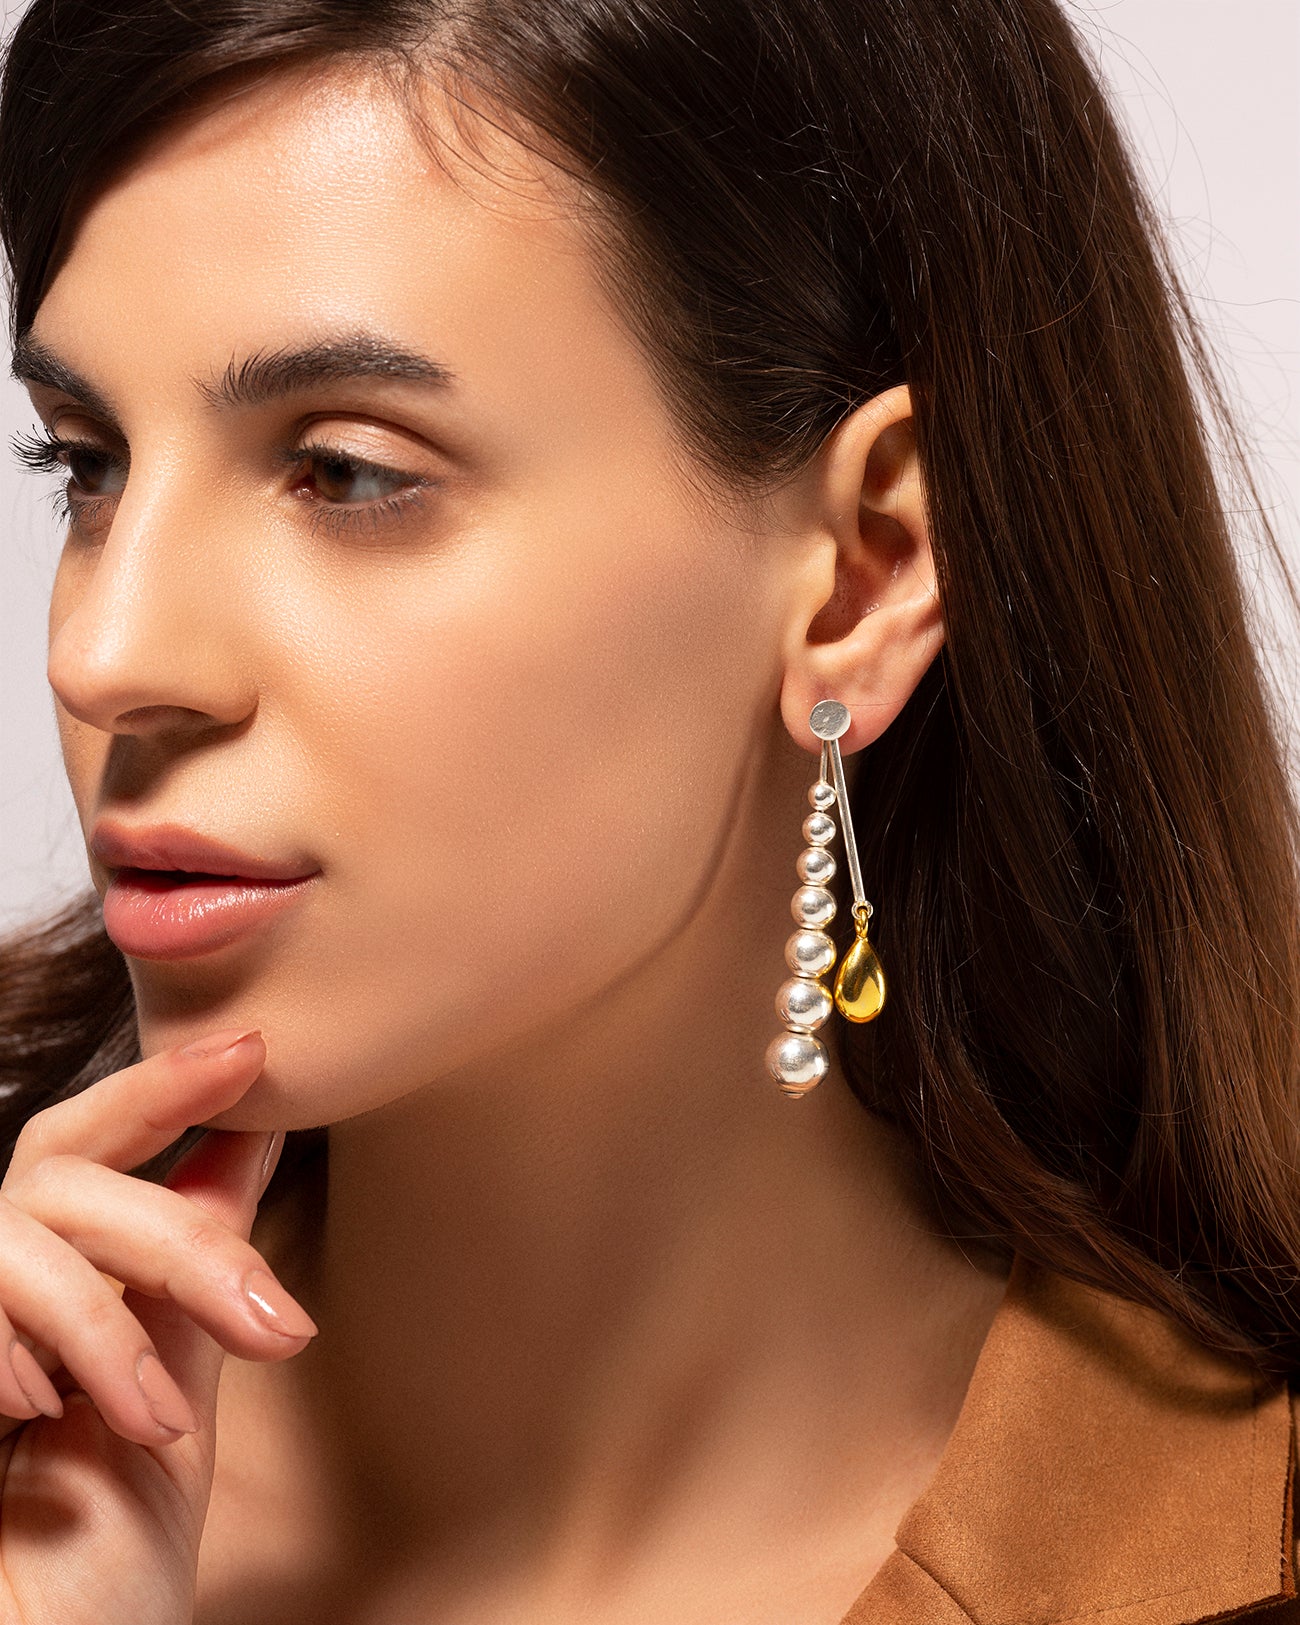 Floss interchangeable earrings